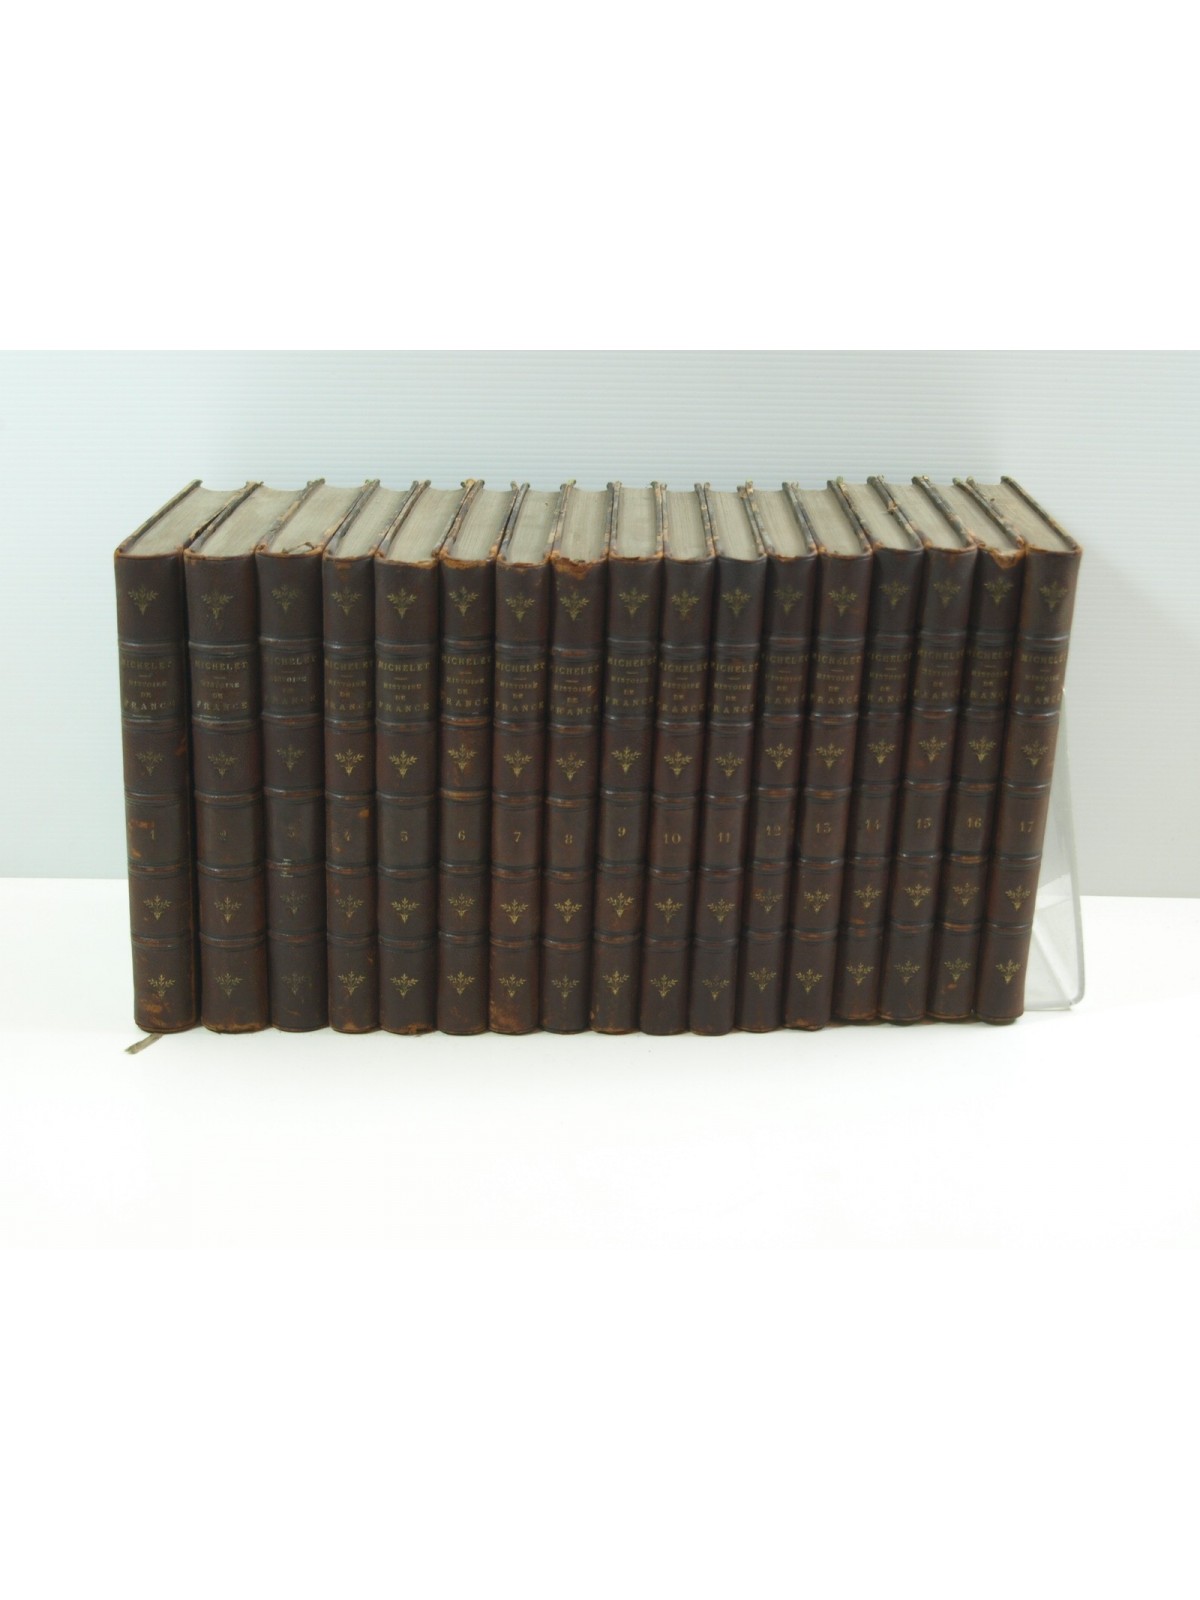 Michelet Jules : Histoire de france. 17 volumes. Complet